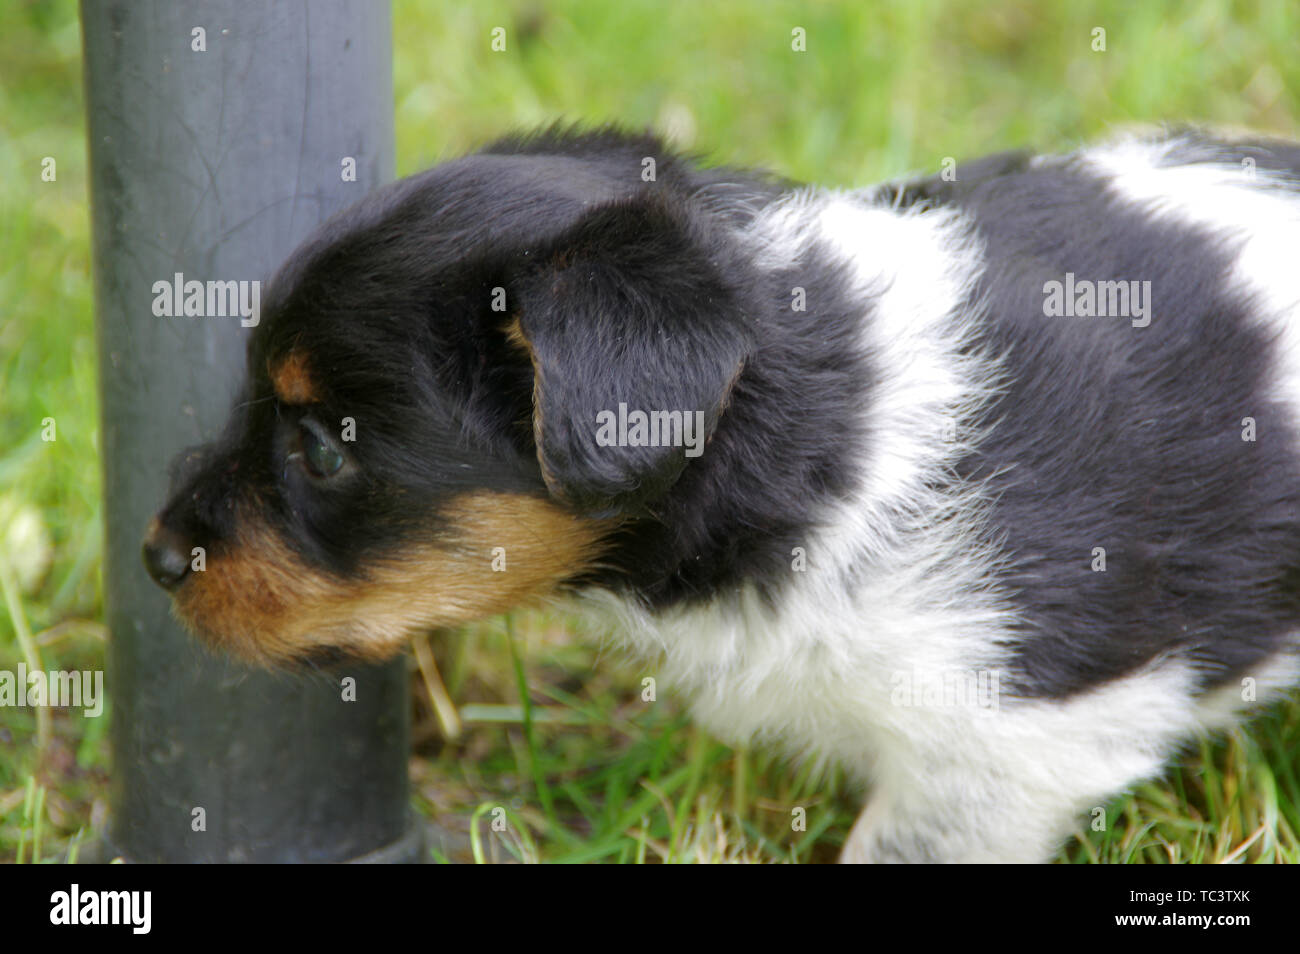 Il cucciolo è camminare sull'erba. Il piccolo cane arriva a conoscere il mondo con curiosità. Foto Stock